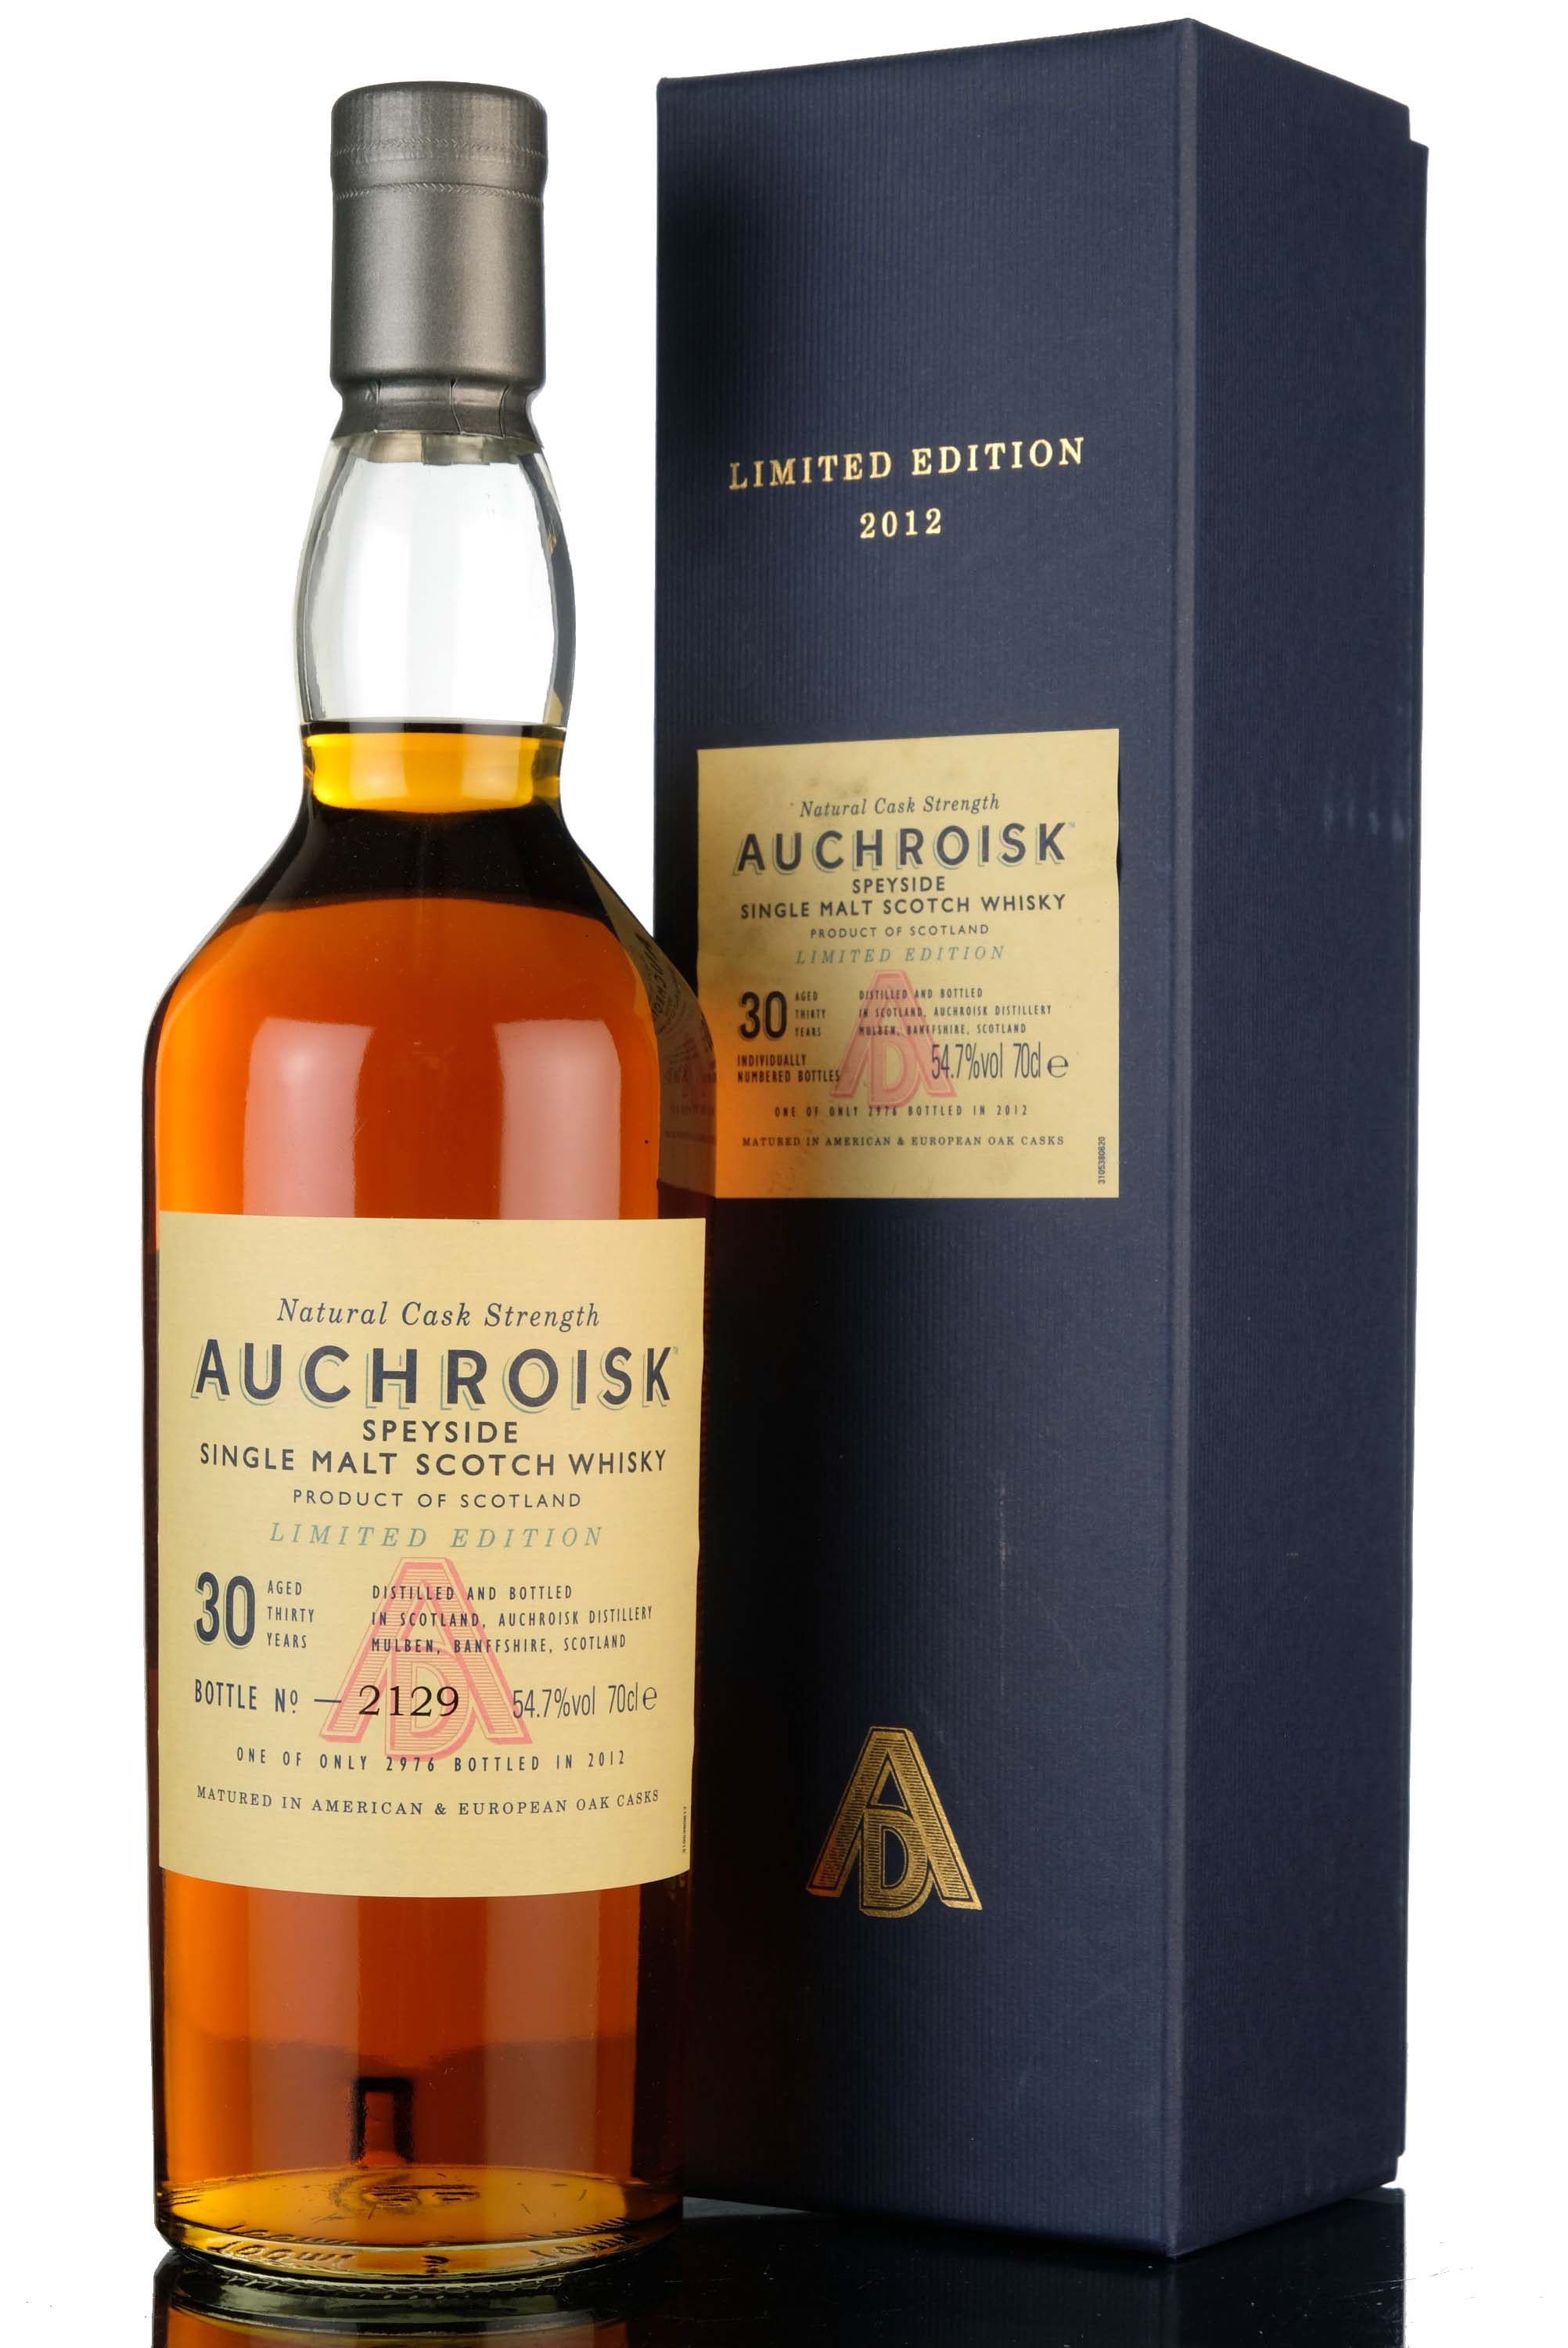 Auchroisk 30 Year Old - 2012 Release